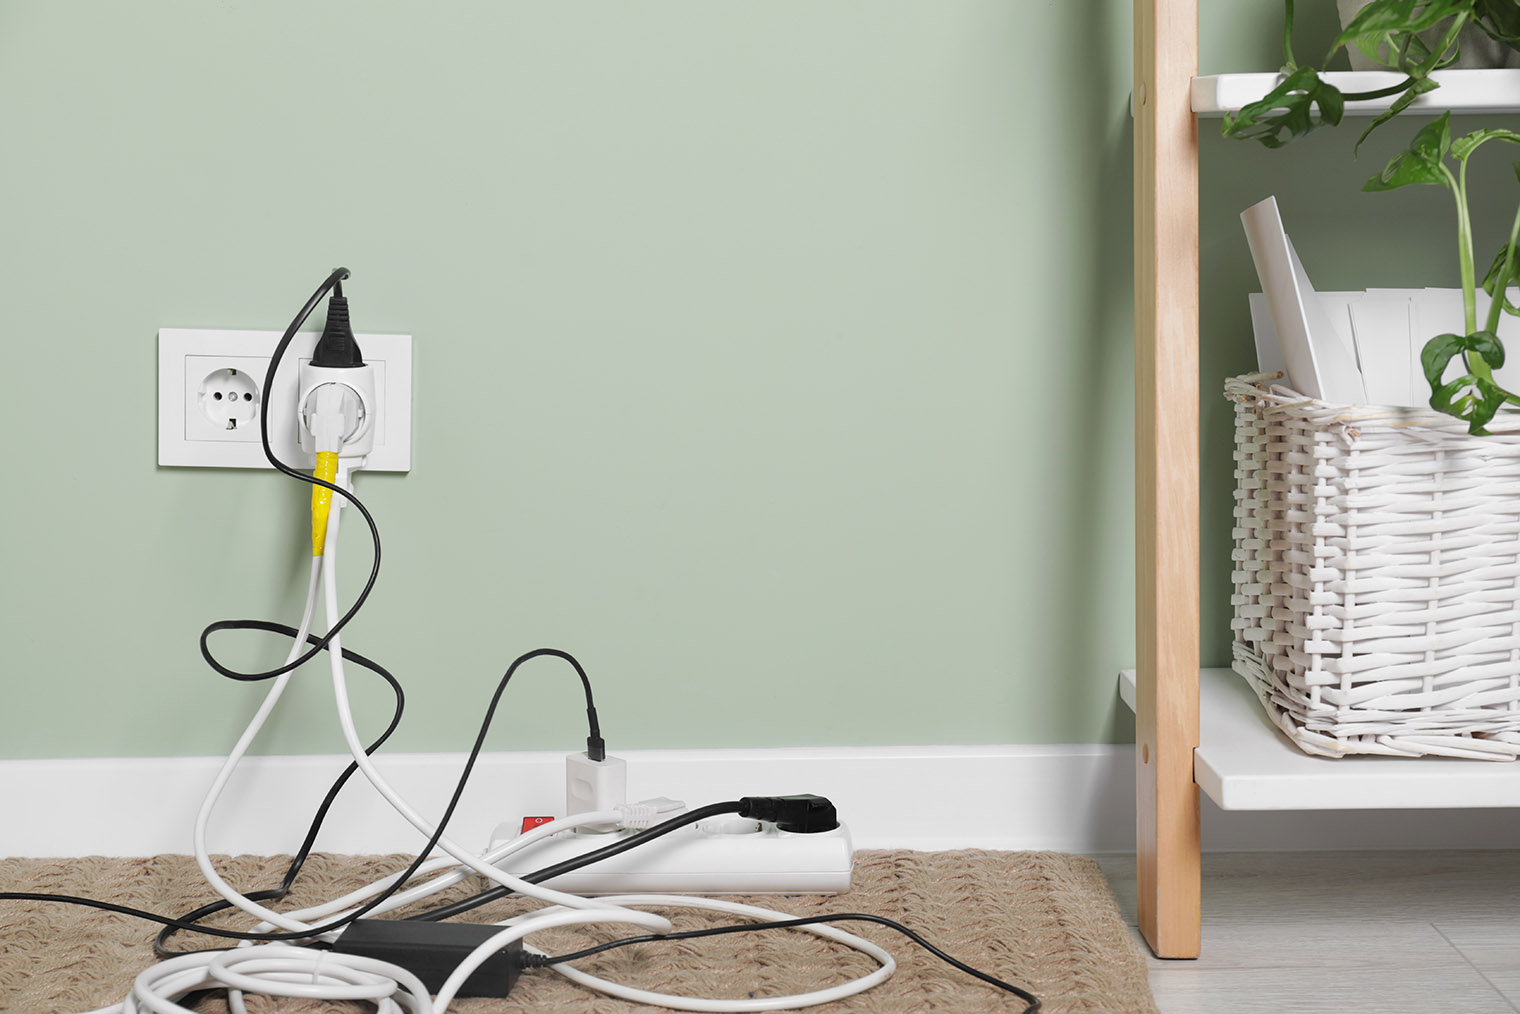 Если к тройнику и удлинителю подключено так много электроприборов, розеток в комнате явно не хватает. Фотография: New Africa / Shutterstock